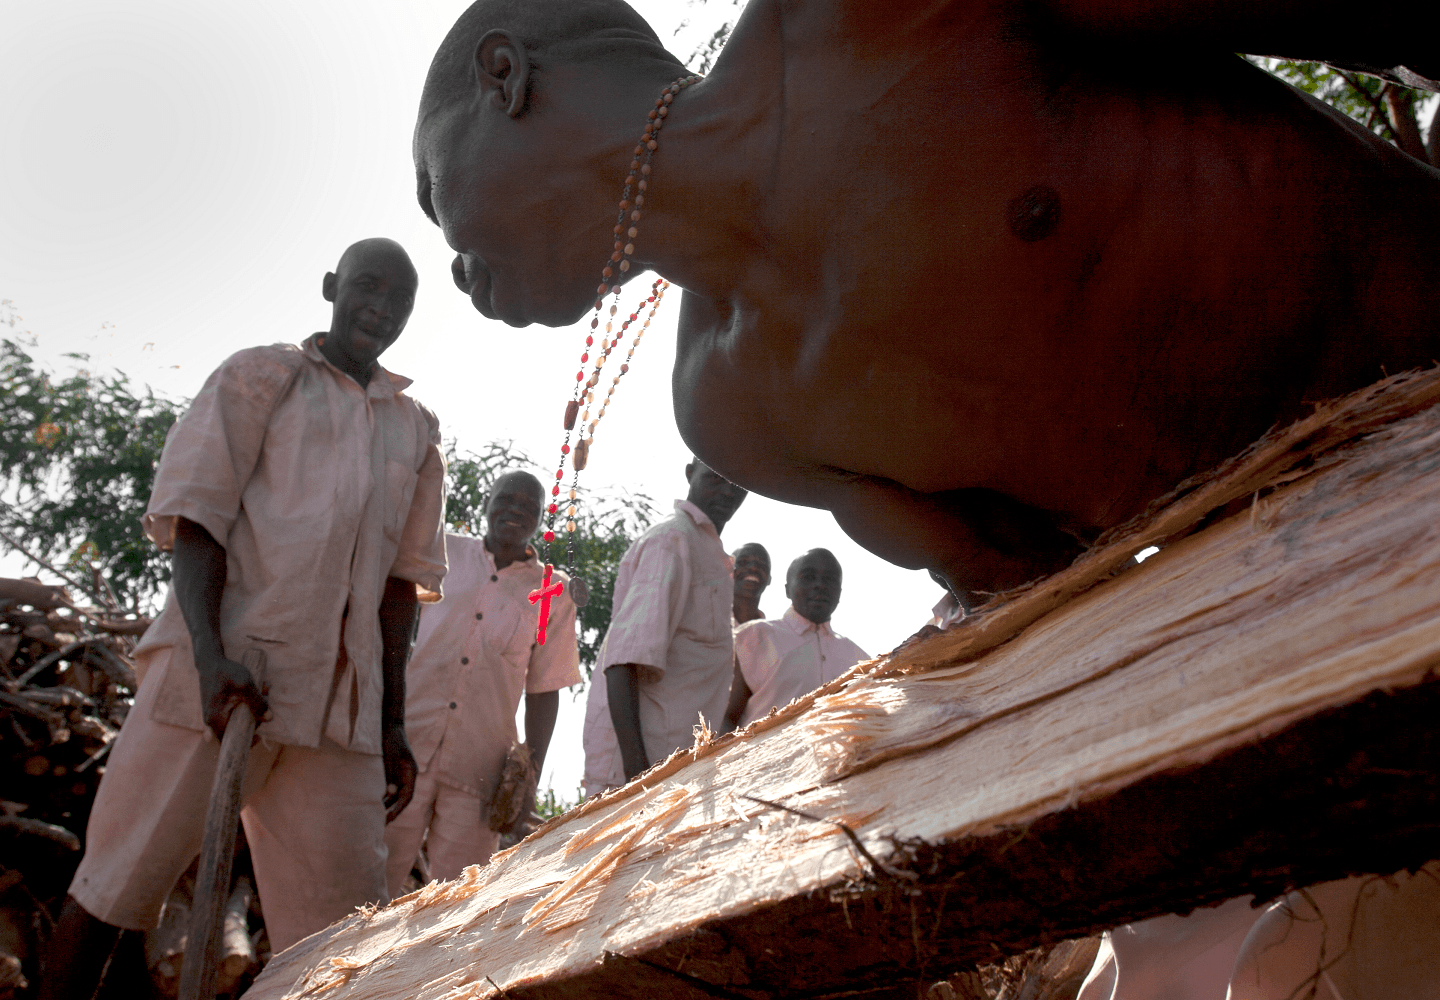 Foto af fanger i et rwandisk fængsel, der under åben himmel er i færd med tungt fysisk arbejde med tømmer.